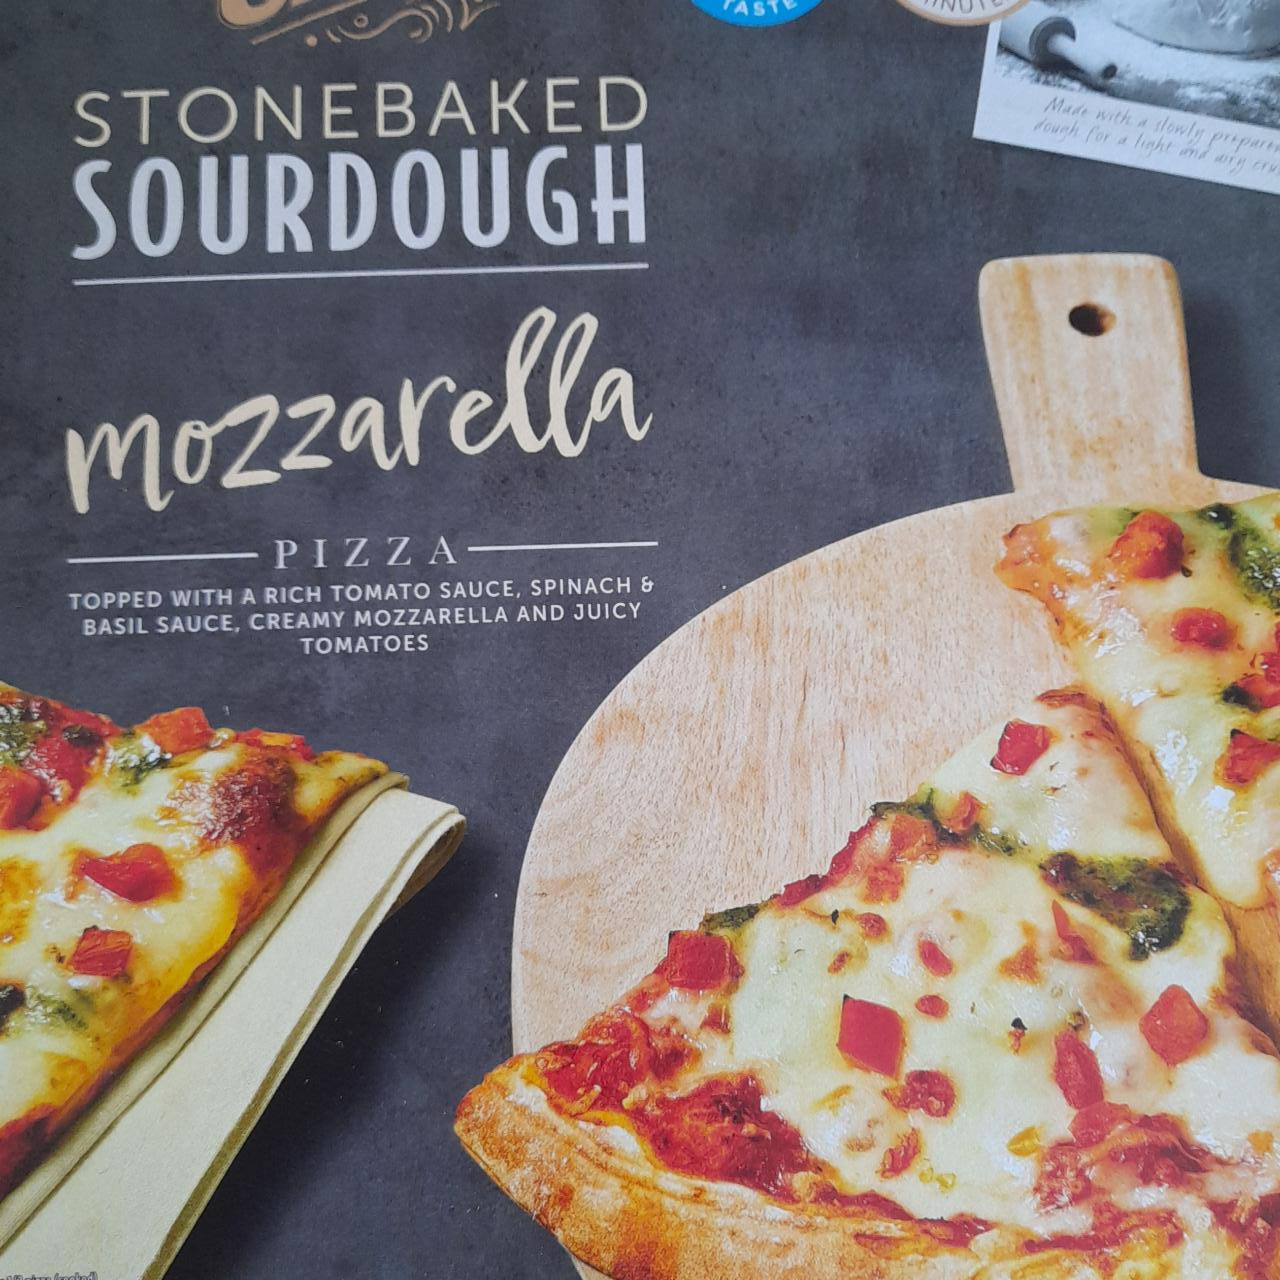 Fotografie - Stonebaked sourdough mozzarella pizza Carlos